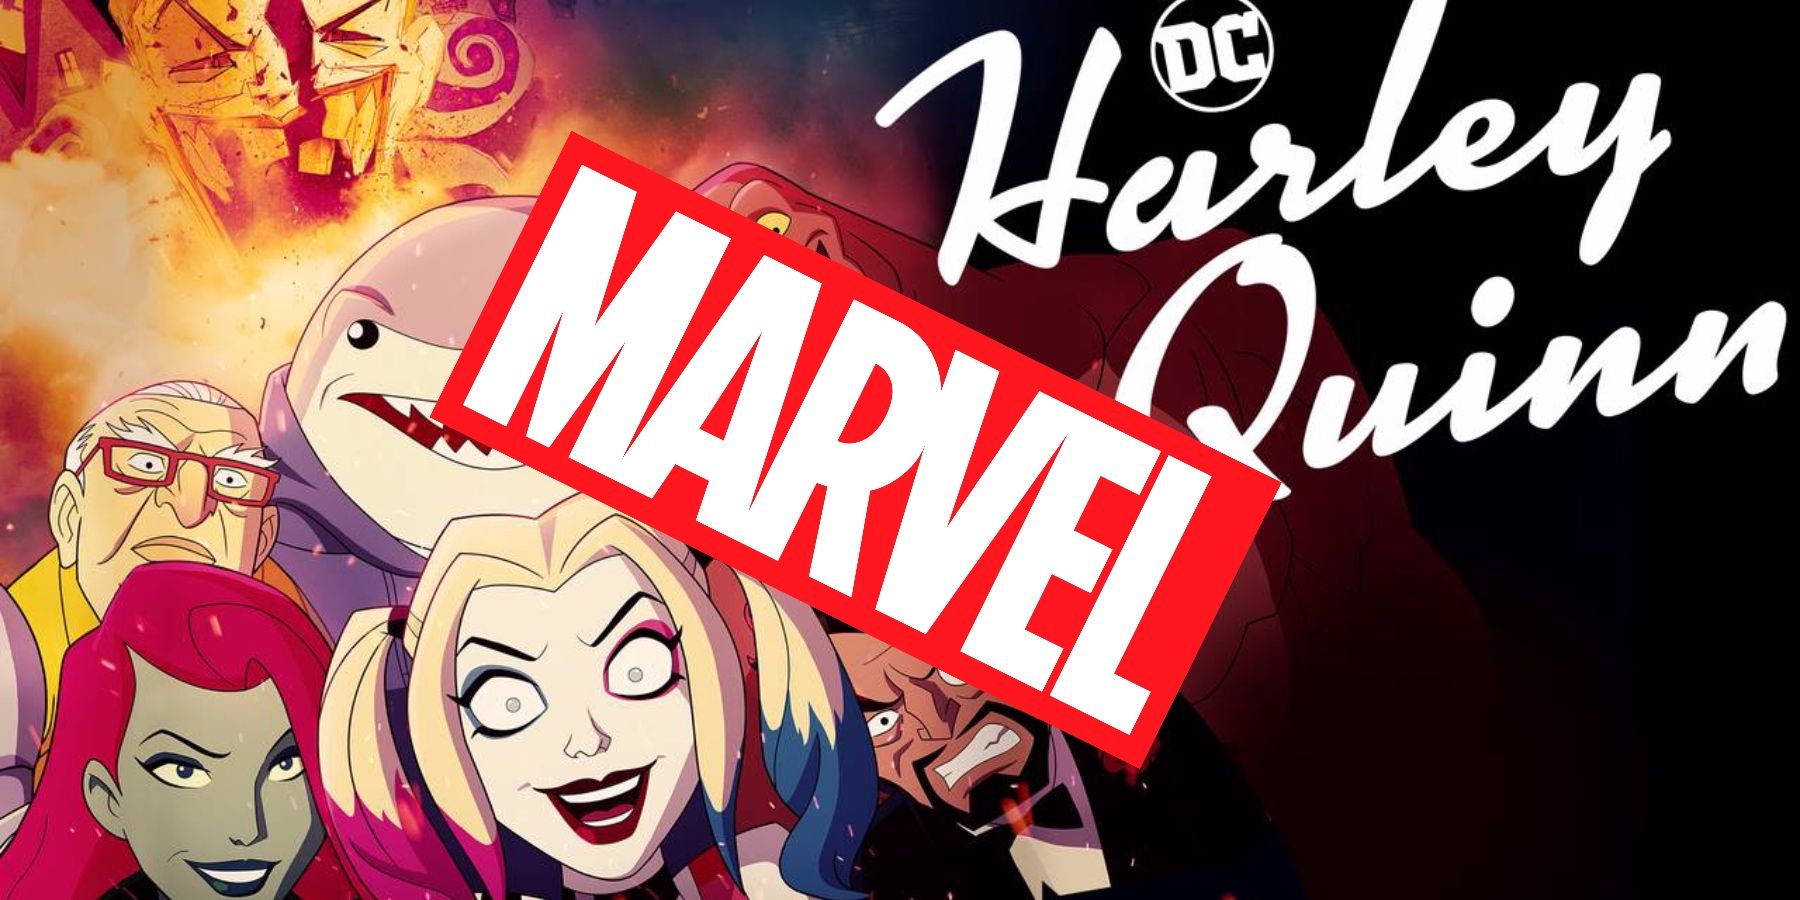 Harley Quinn Storyboard-ის შემსრულებელი მარველის გამოუცხადებელი პროექტის რეჟისორად